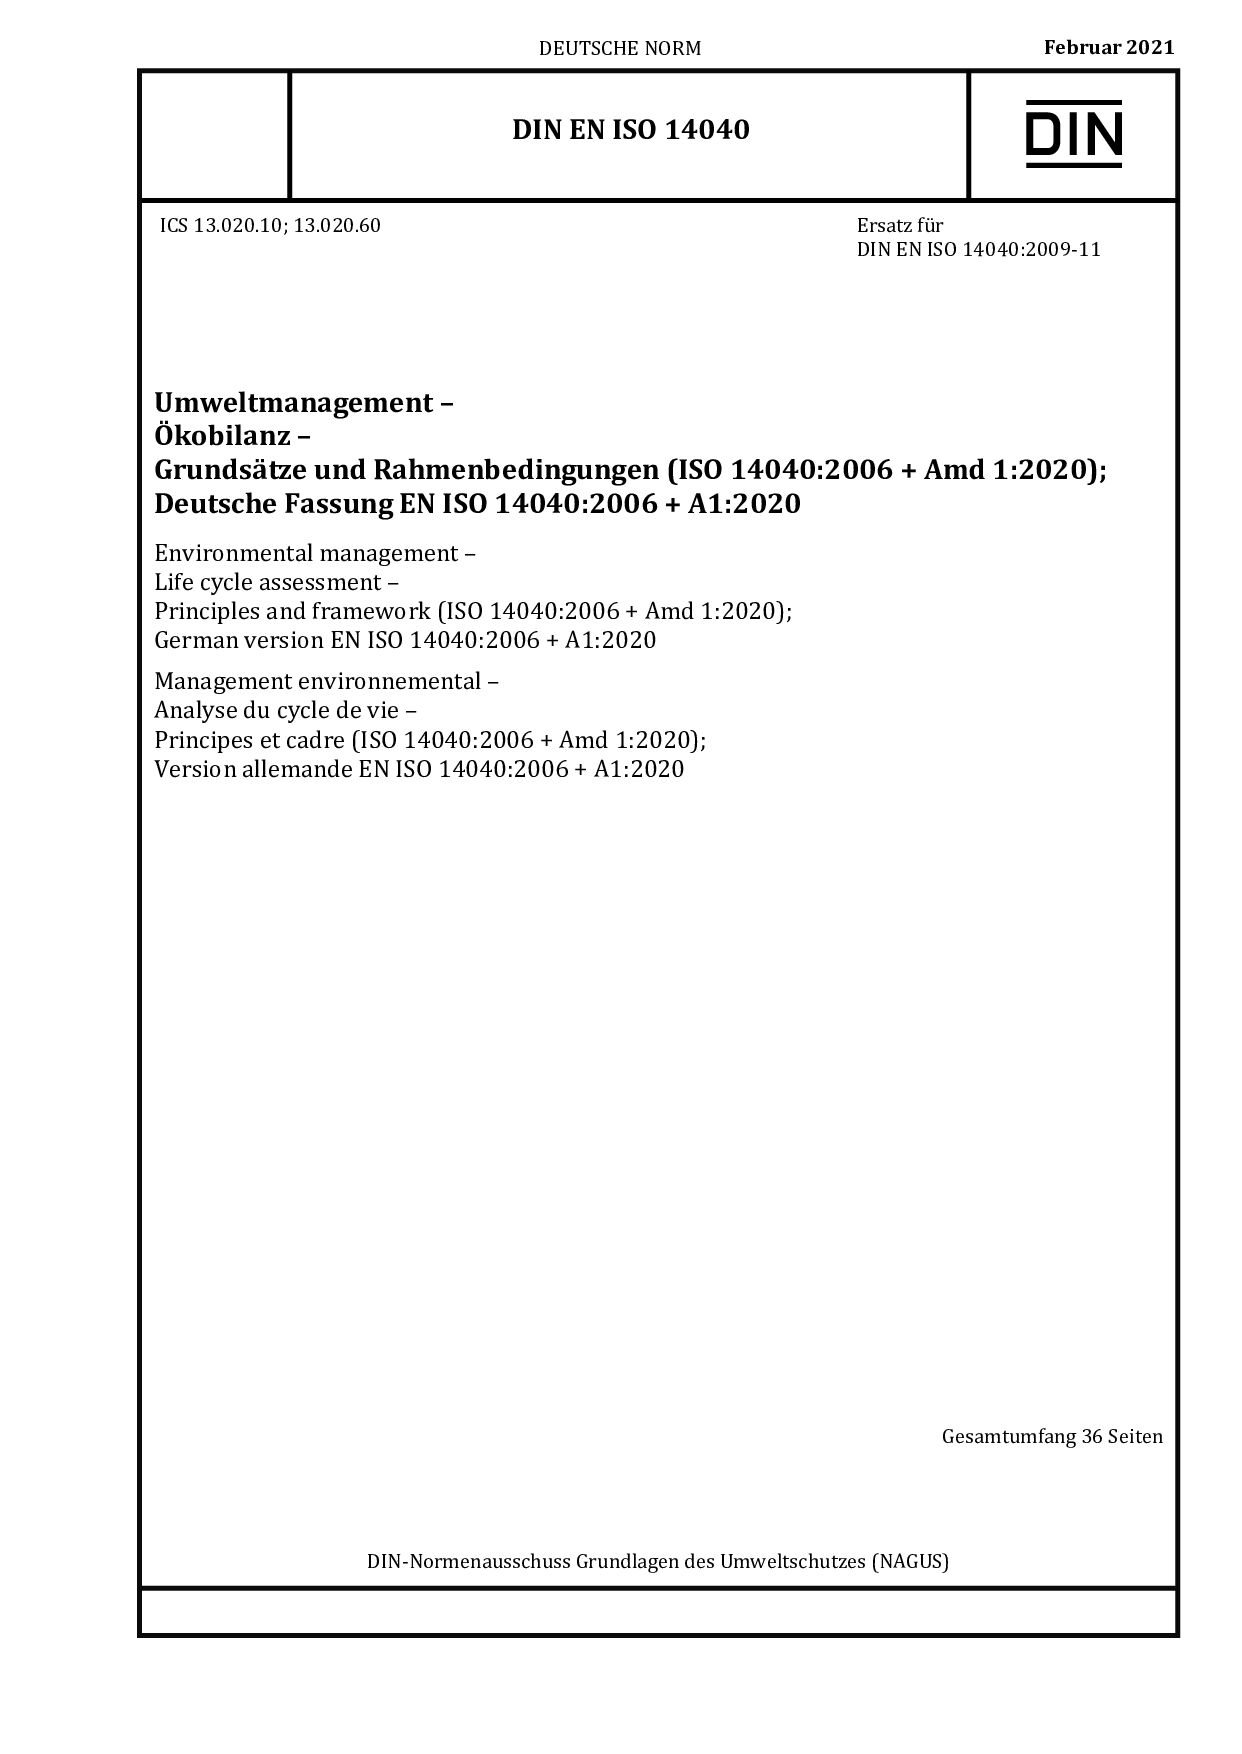 DIN EN ISO 14040:2021-02